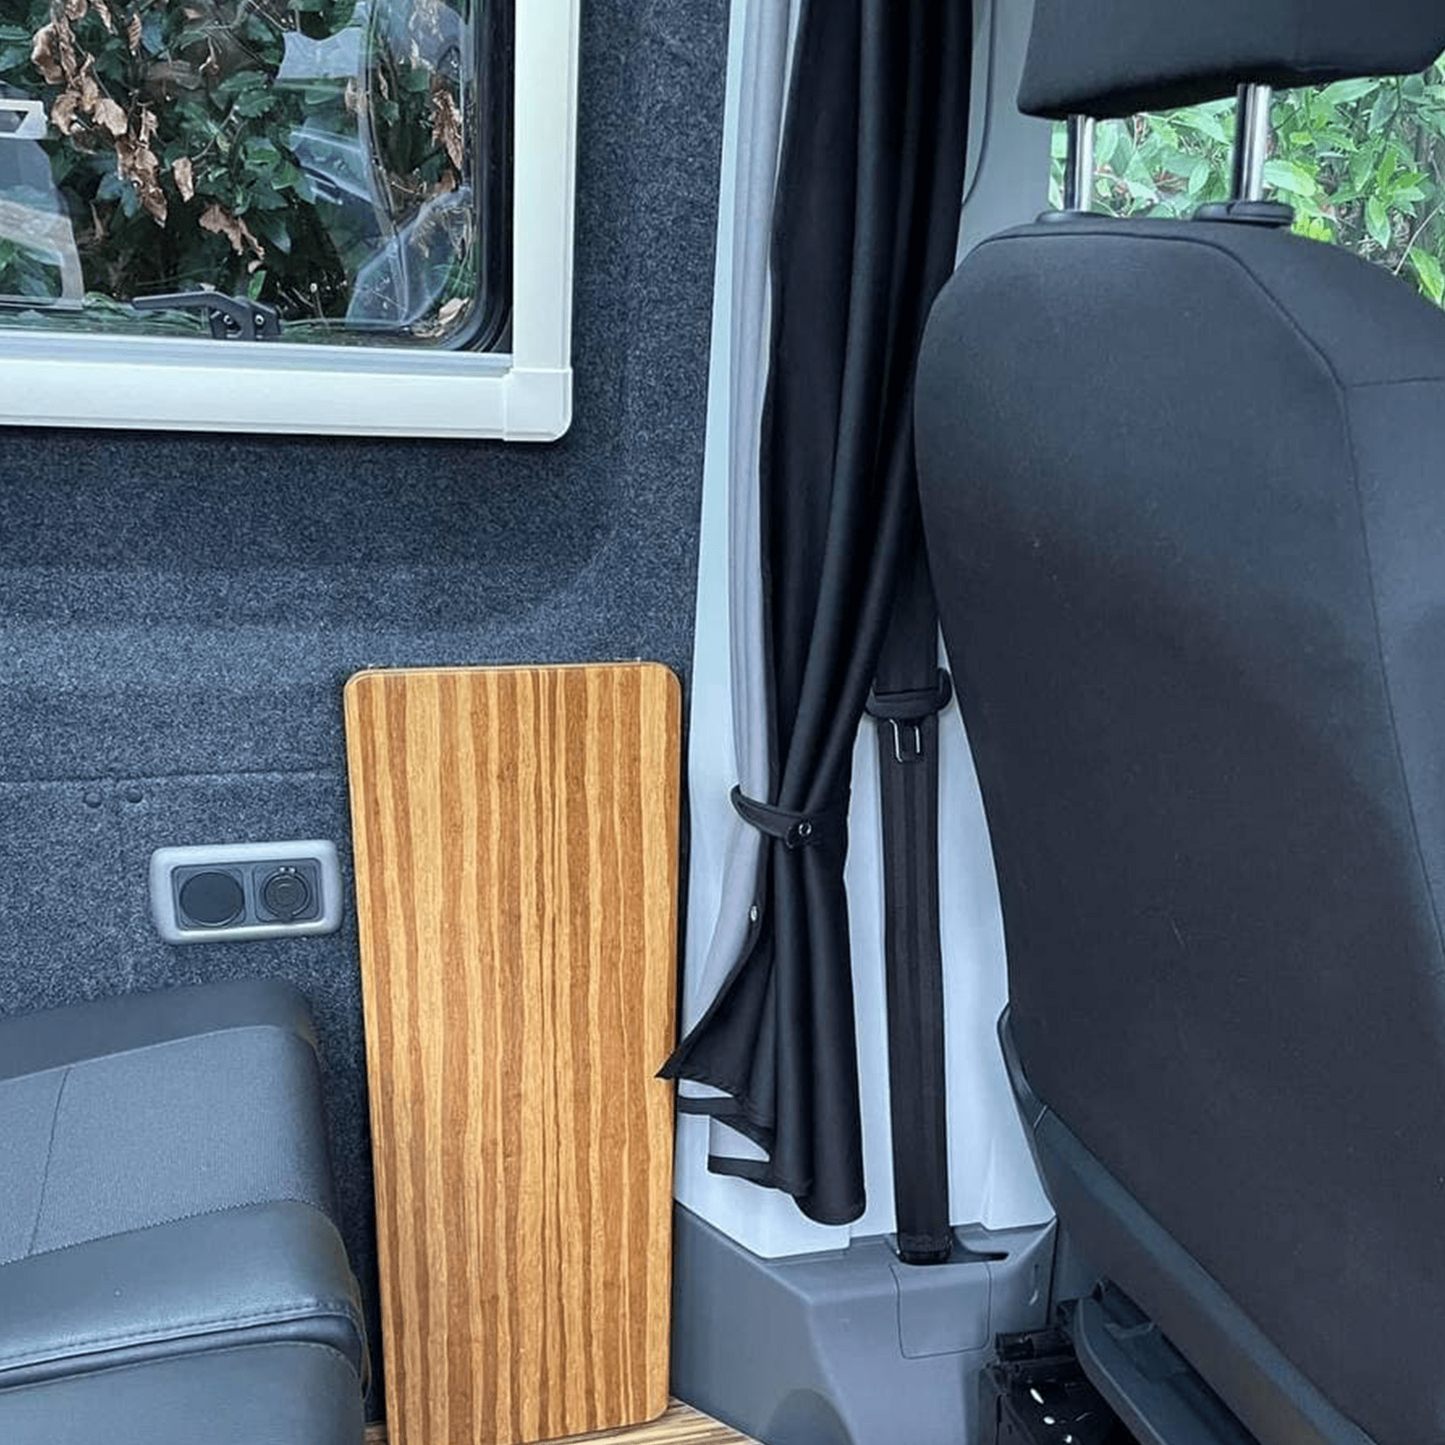 MAN TGE / Nuevo Kit de Cortina Separadora de Cabina Crafter para Conversión de Campervan